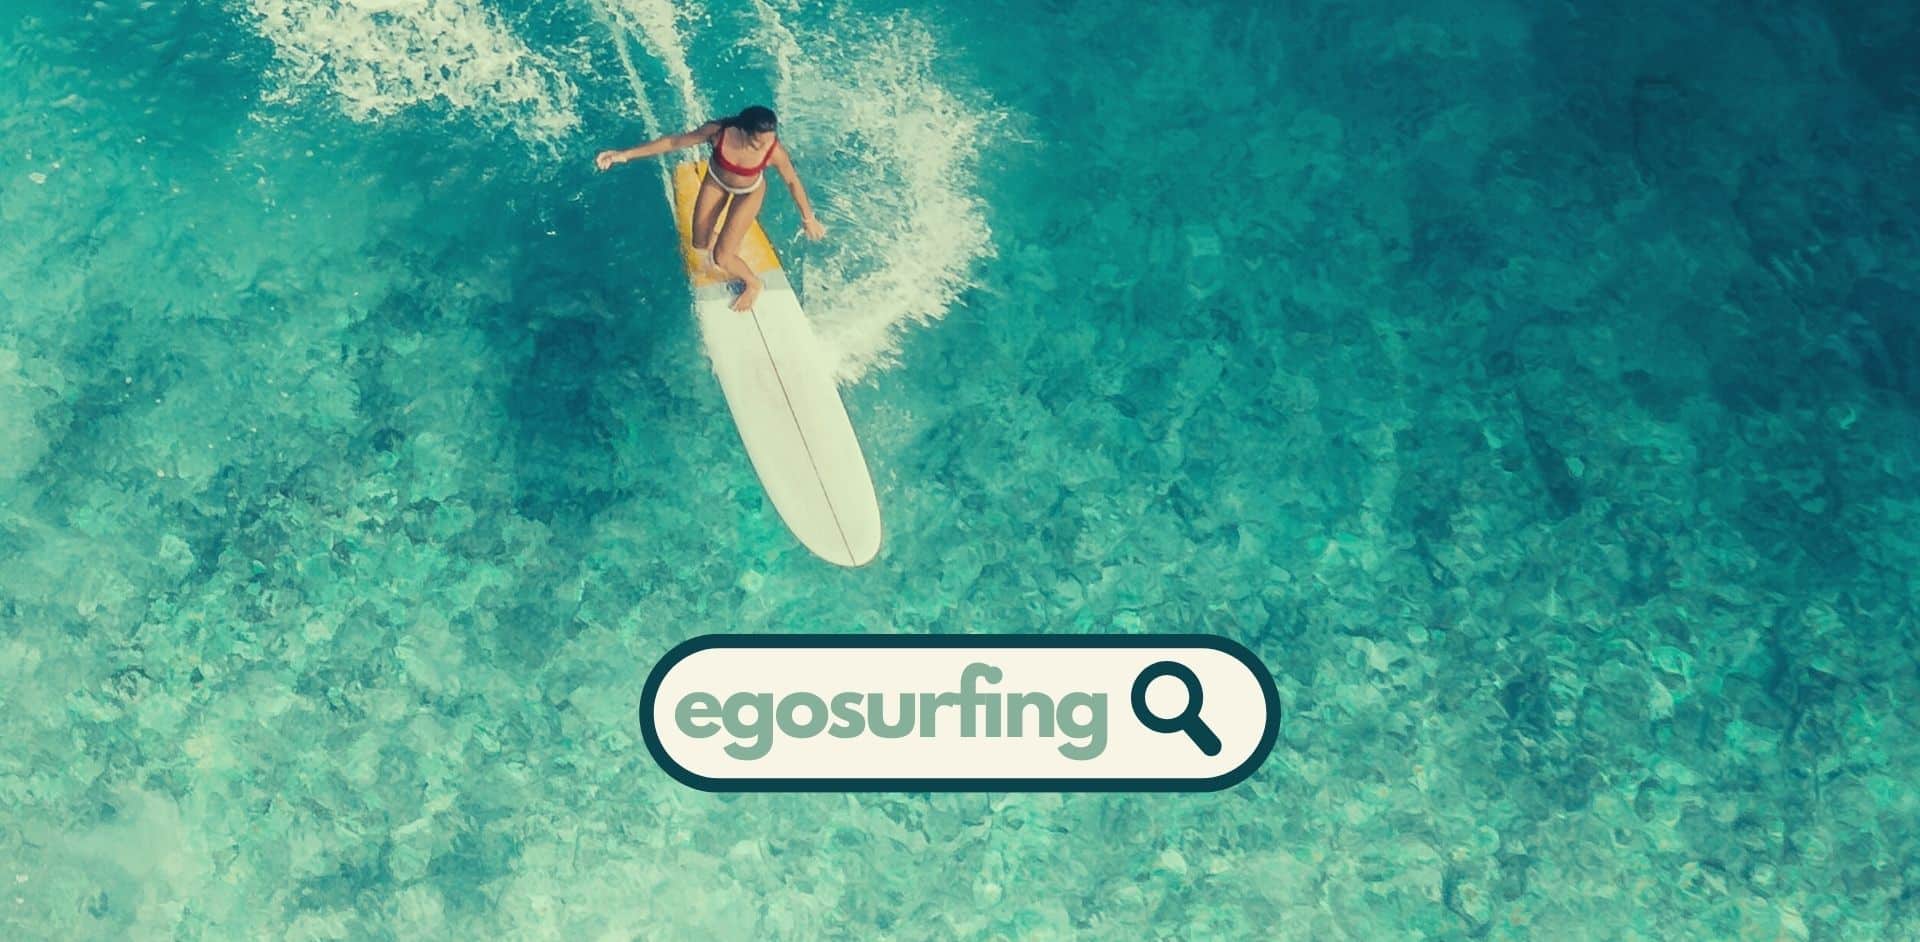 egosurfing